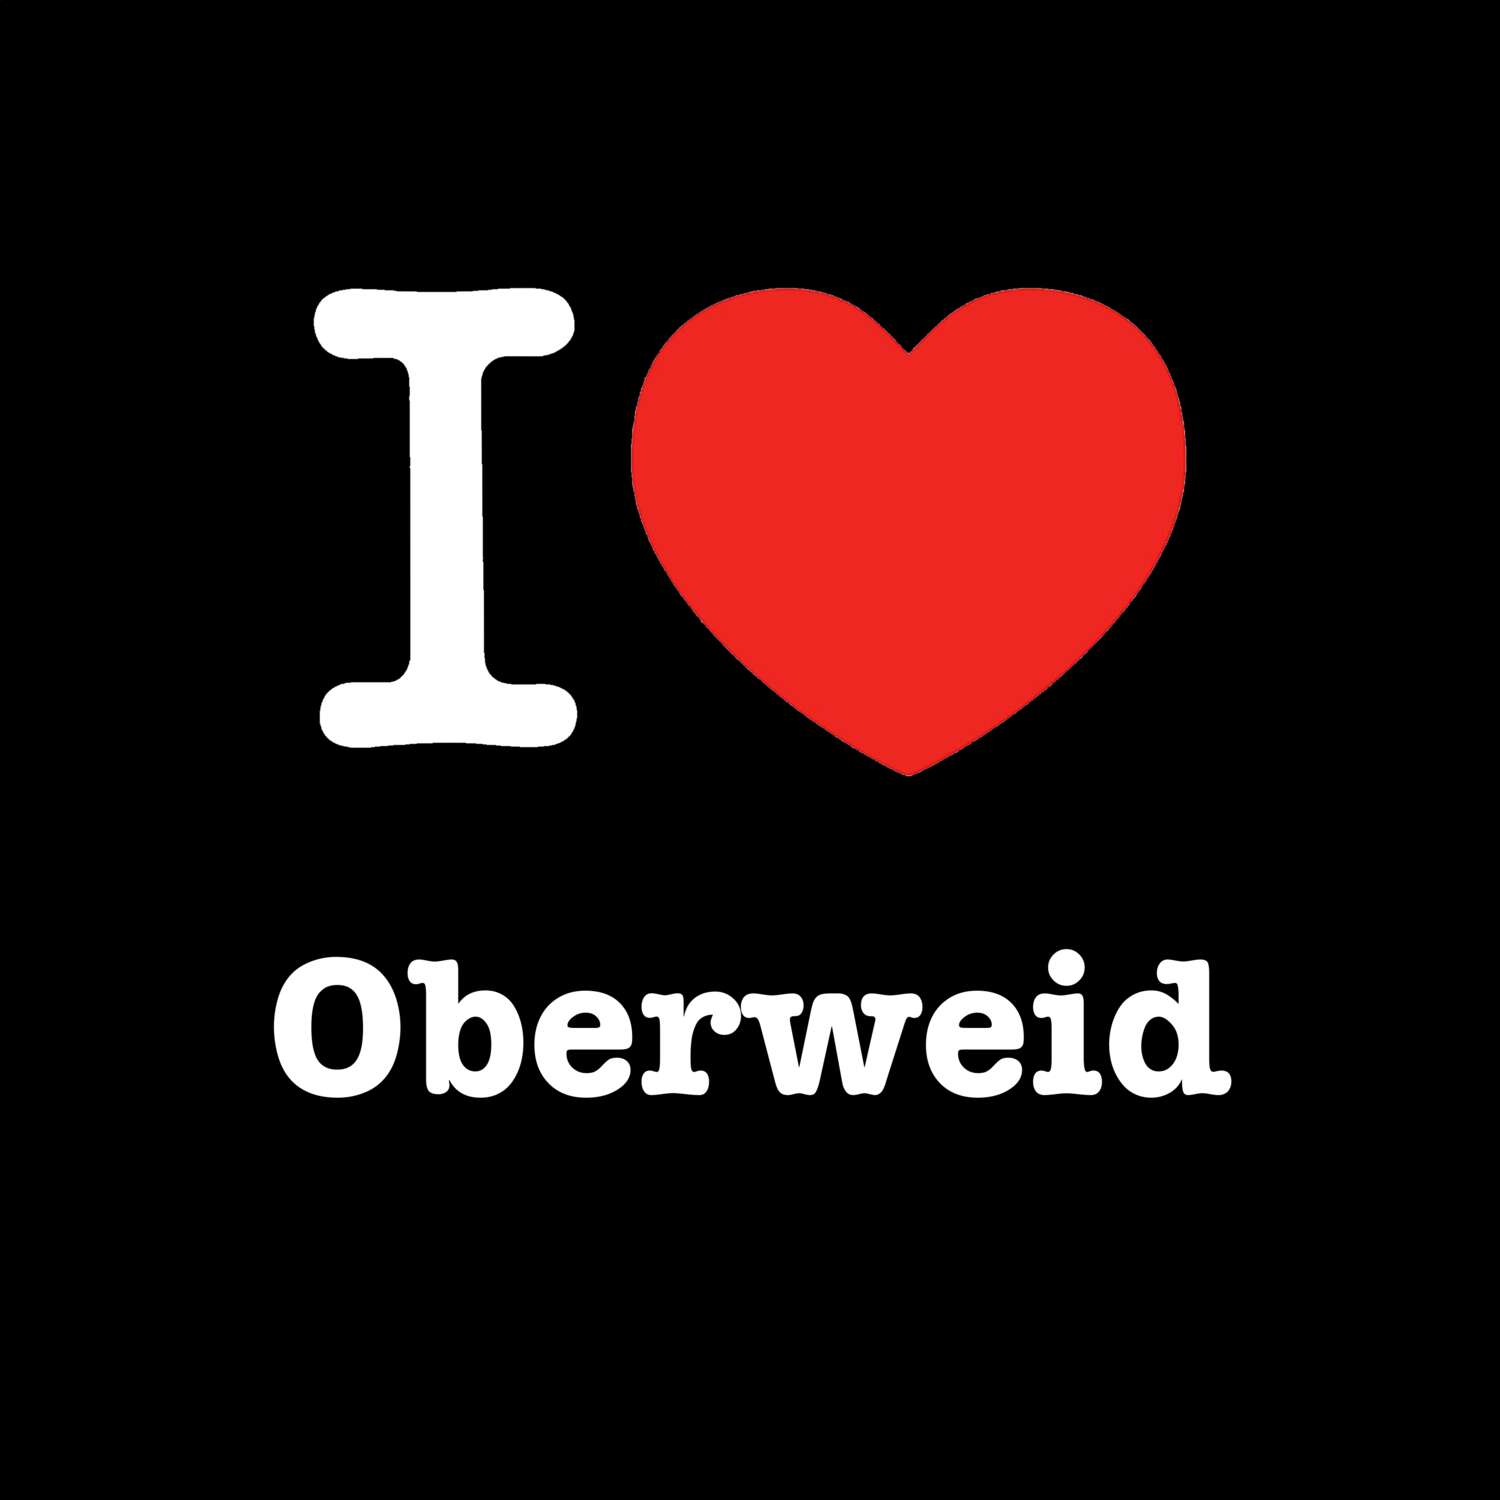 Oberweid T-Shirt »I love«